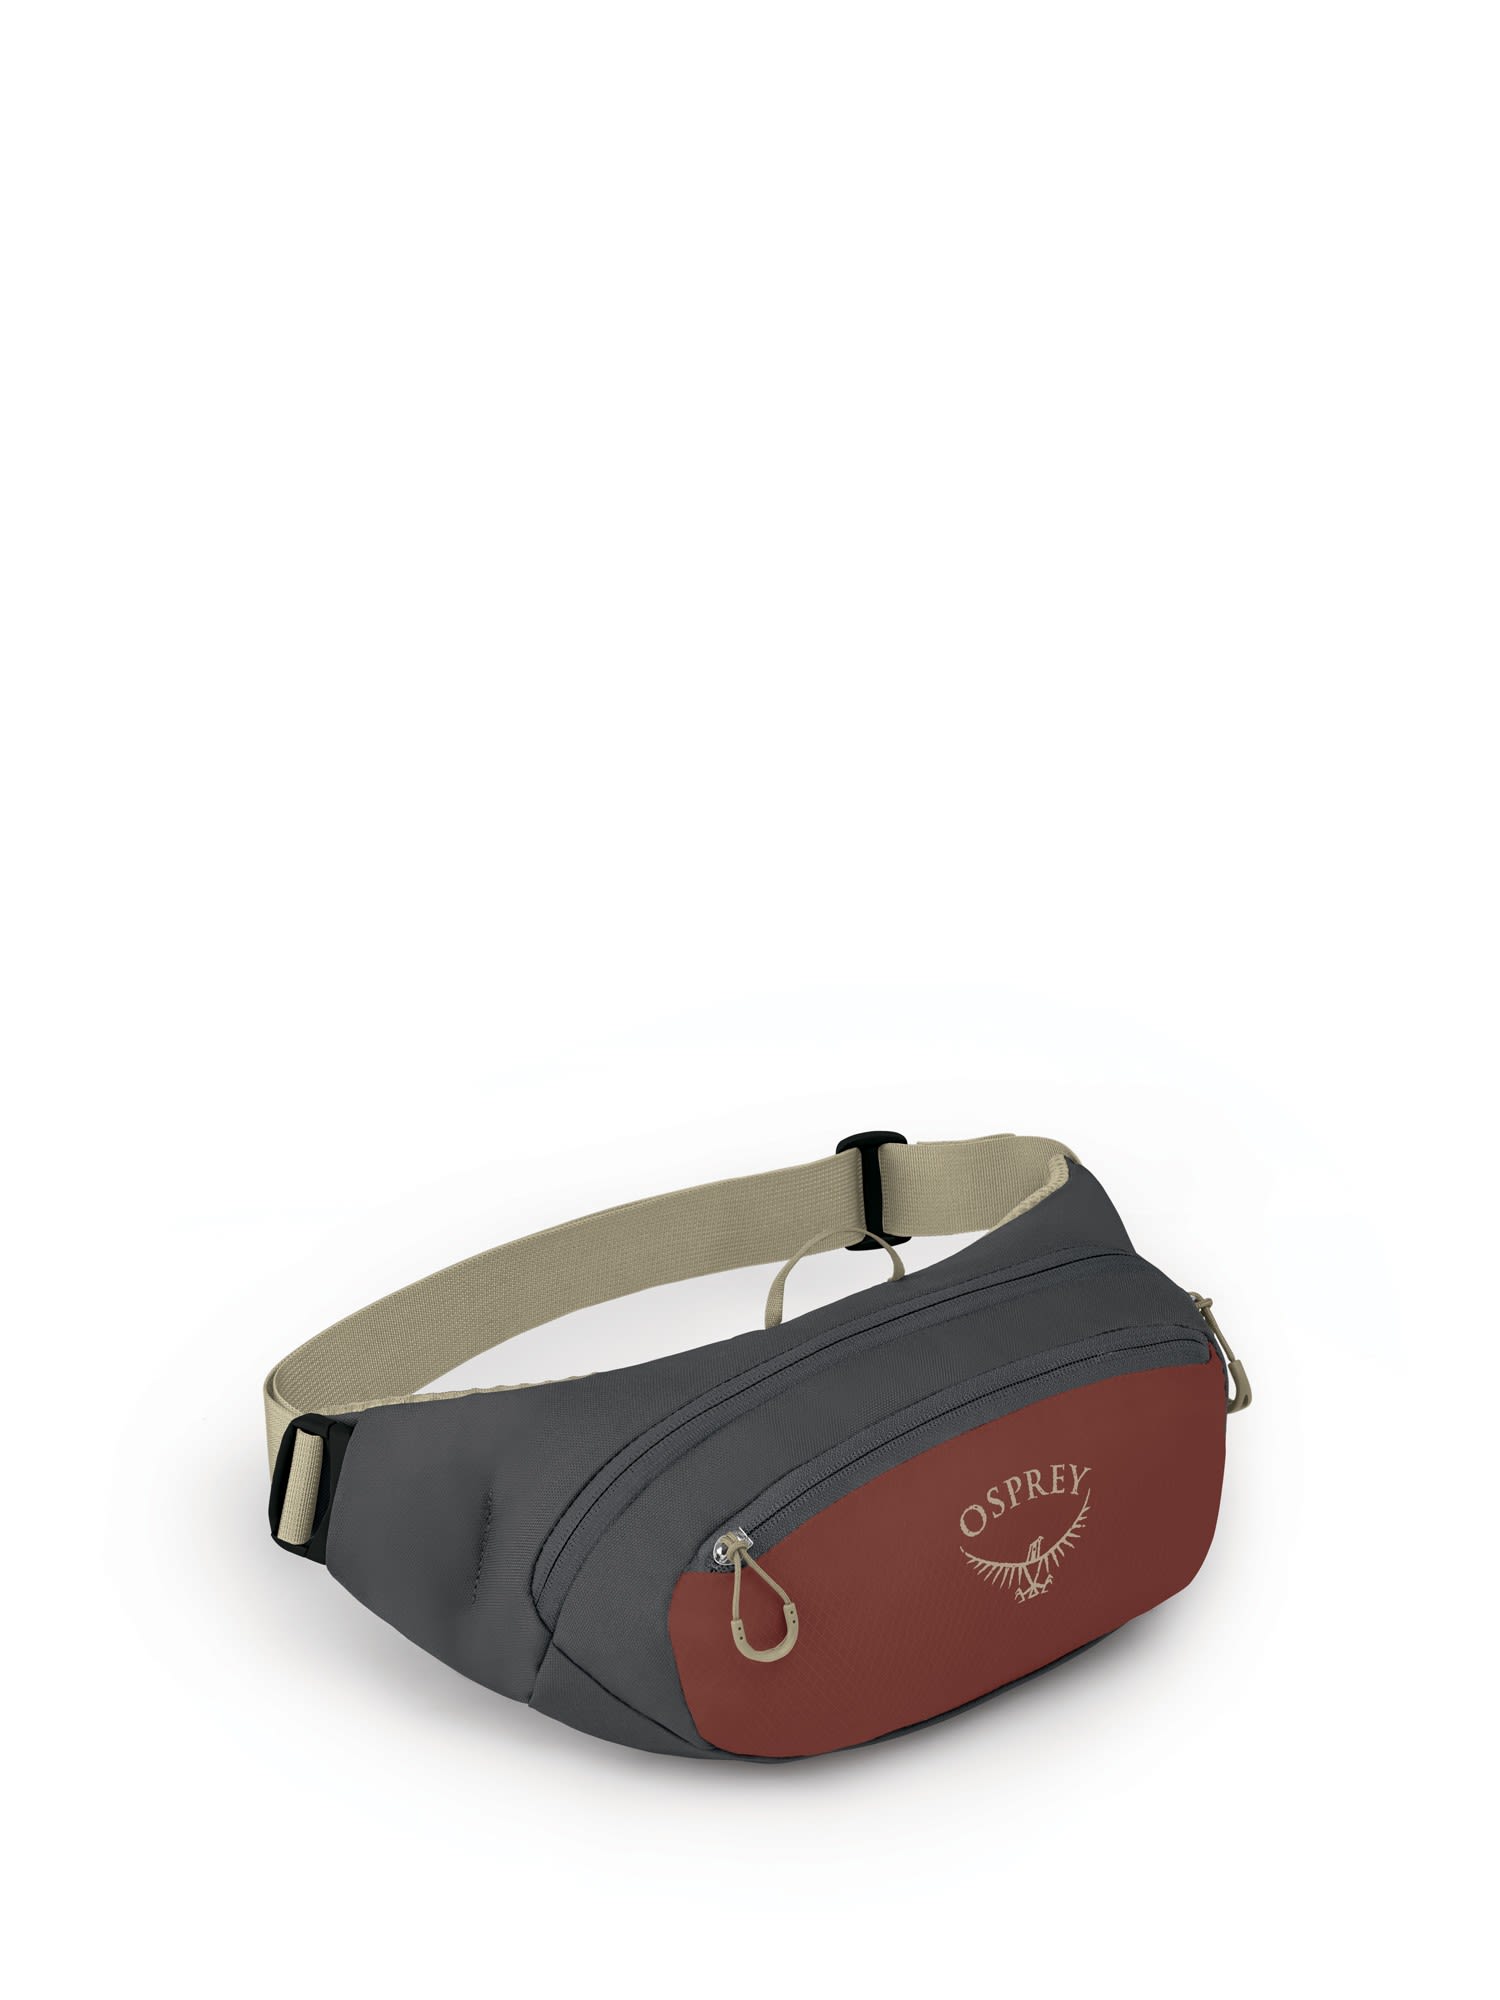 Osprey Daylite Waist Grau - Rot- Grtel- und Hfttaschen- Grsse 2l - Farbe Acorn Red - Tunnel Vision Grey